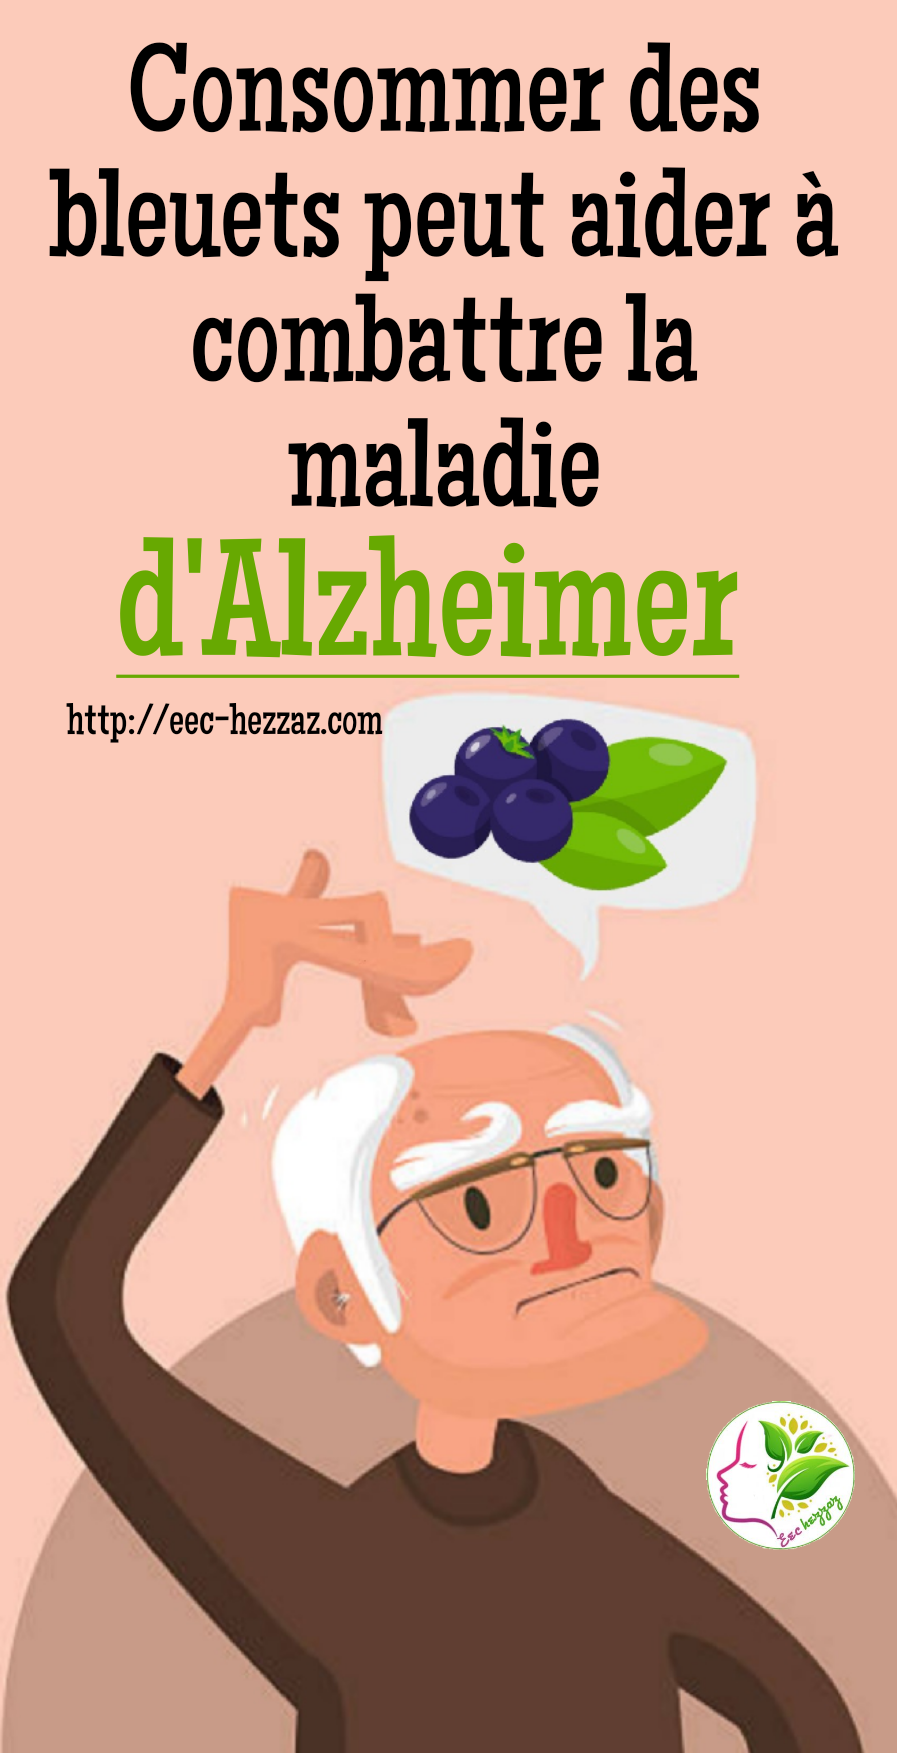 Consommer des bleuets peut aider à combattre la maladie d'Alzheimer